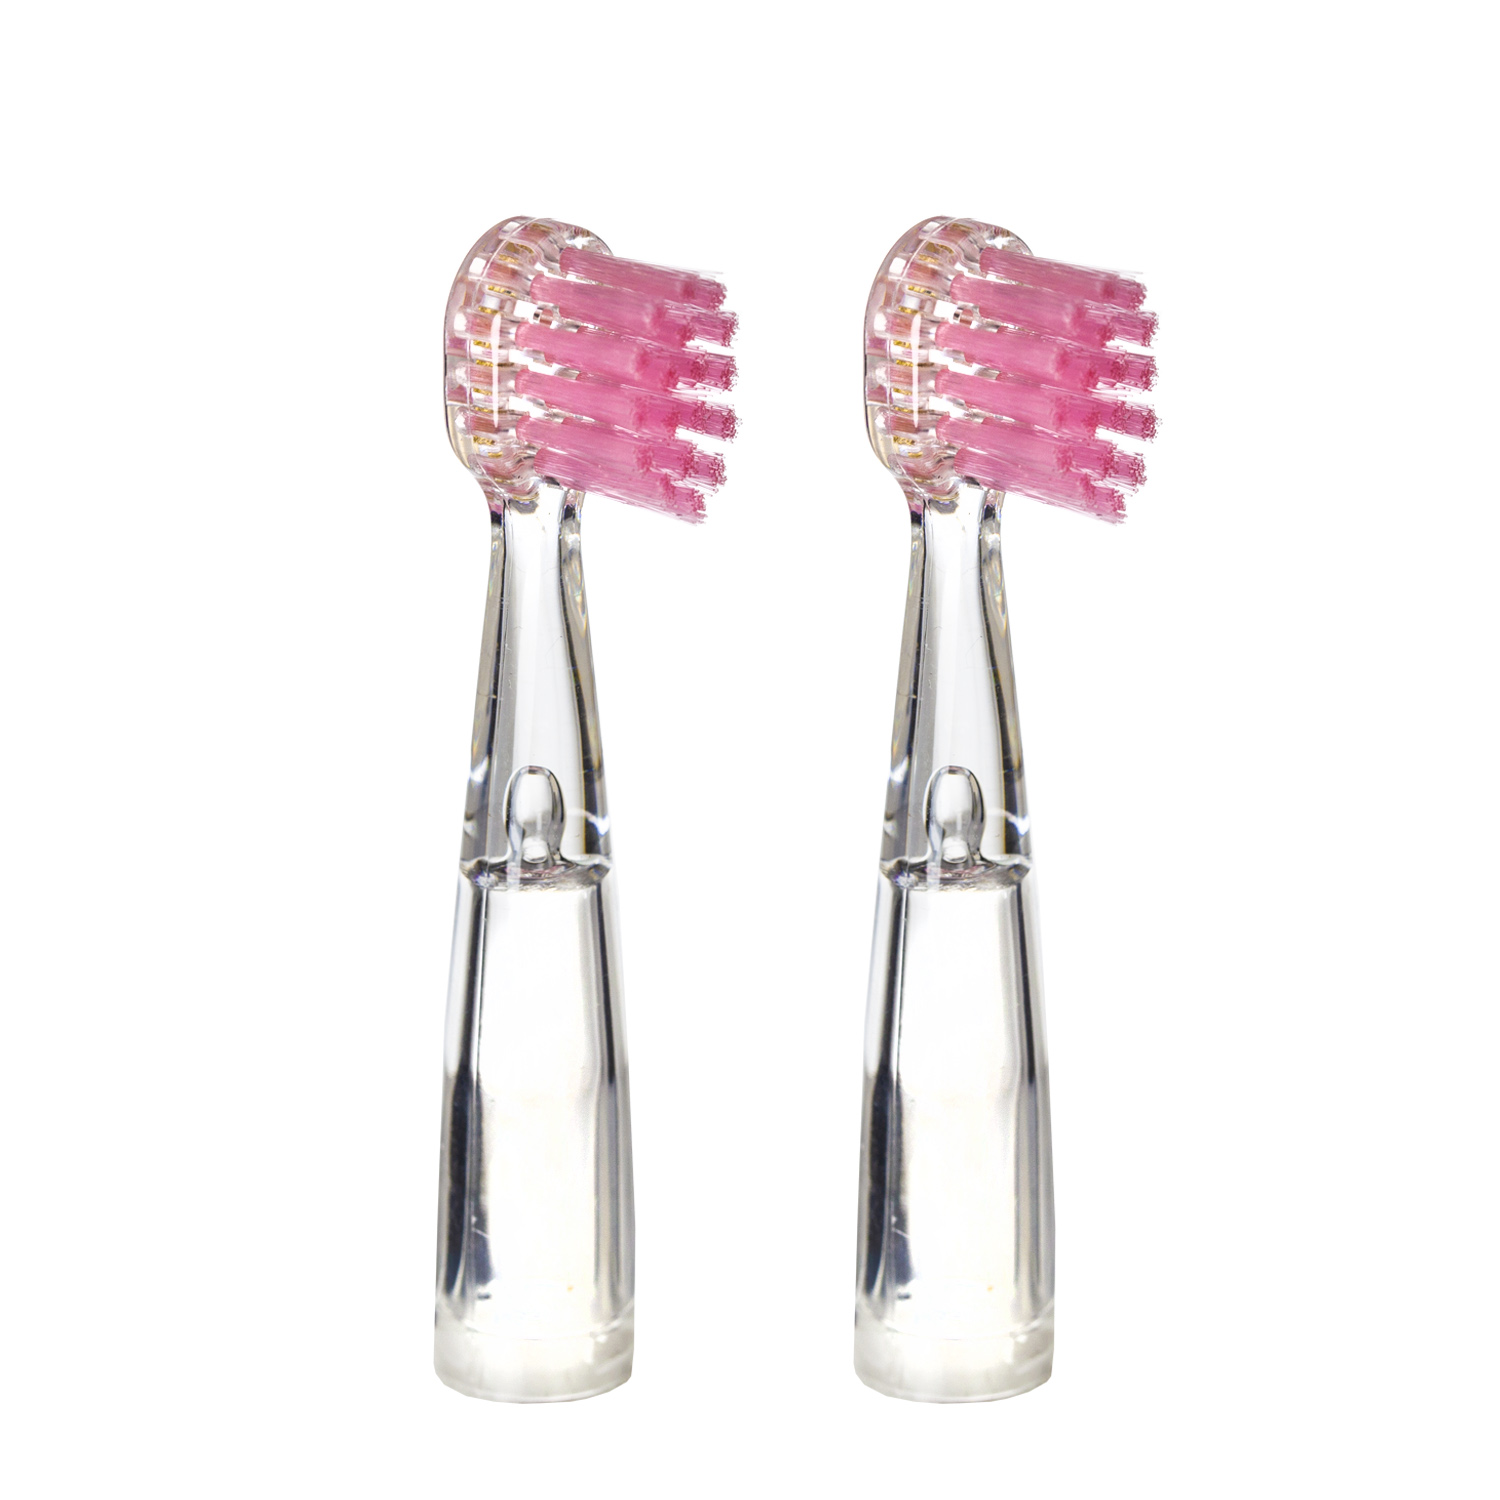 Насадка для детской электрической зубной щетки Revyline RL 025, розовая, 2 шт., 6171 насадка для электрической зубной щетки beiber kids oral b 4 шт